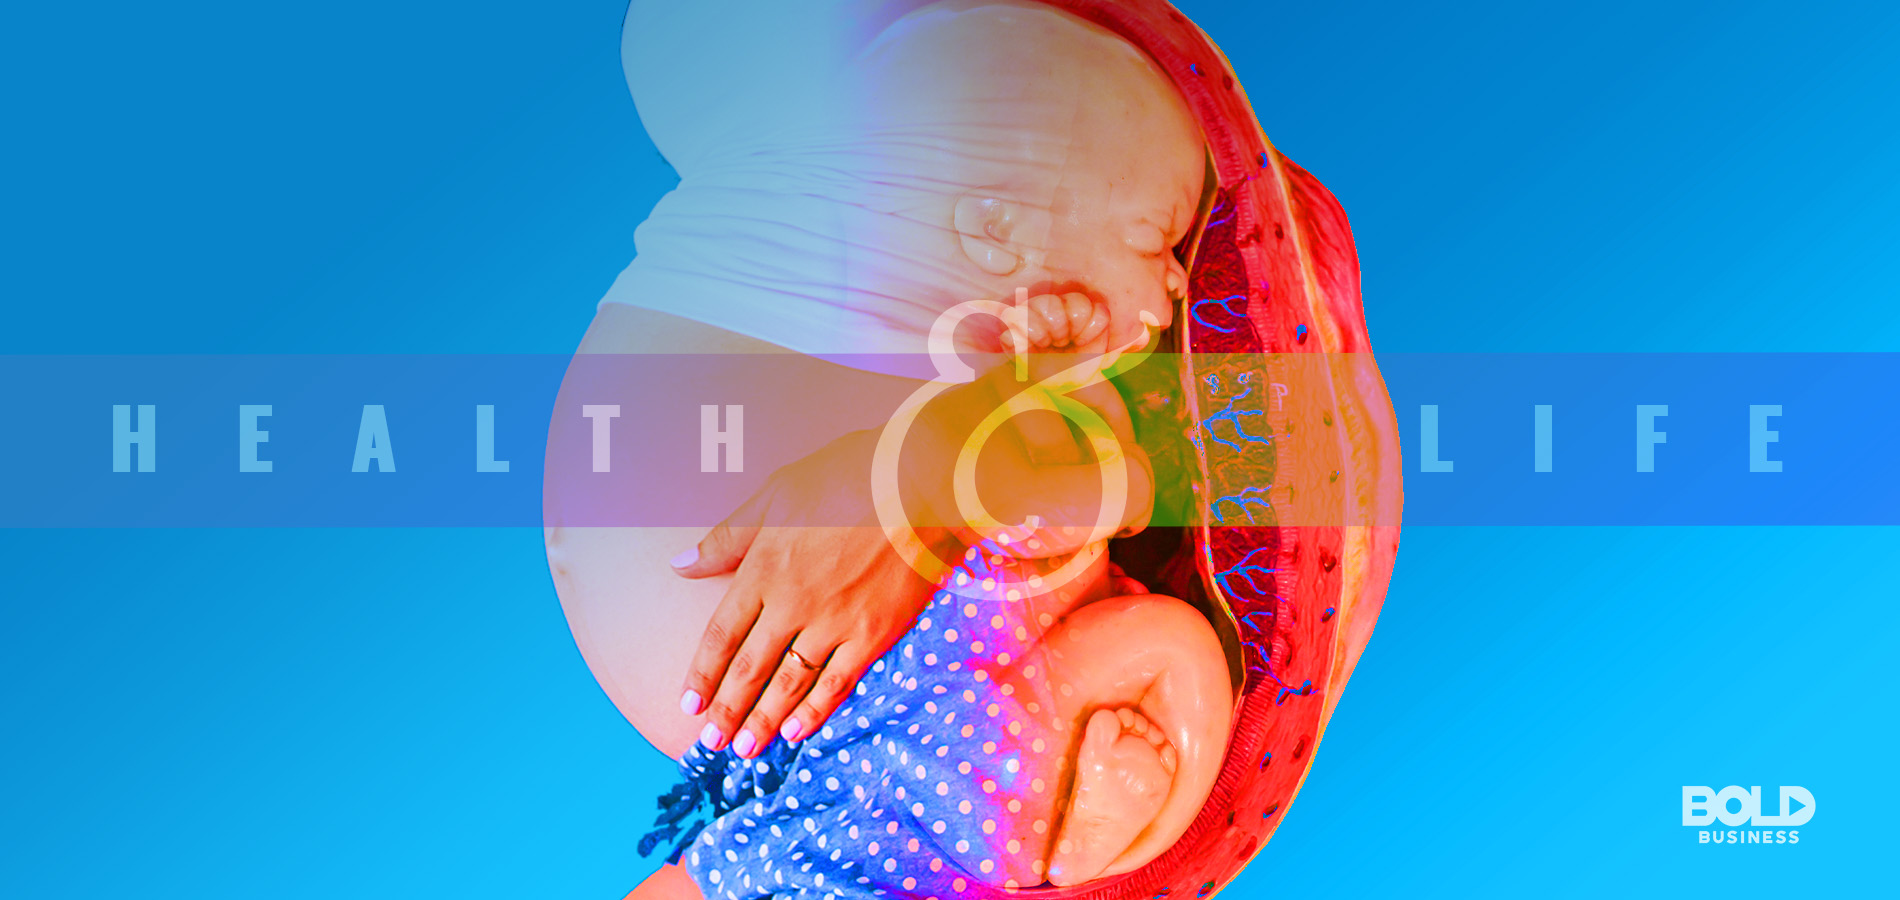 health & life text over pregnant woman - Maternal-Fetal Medicine